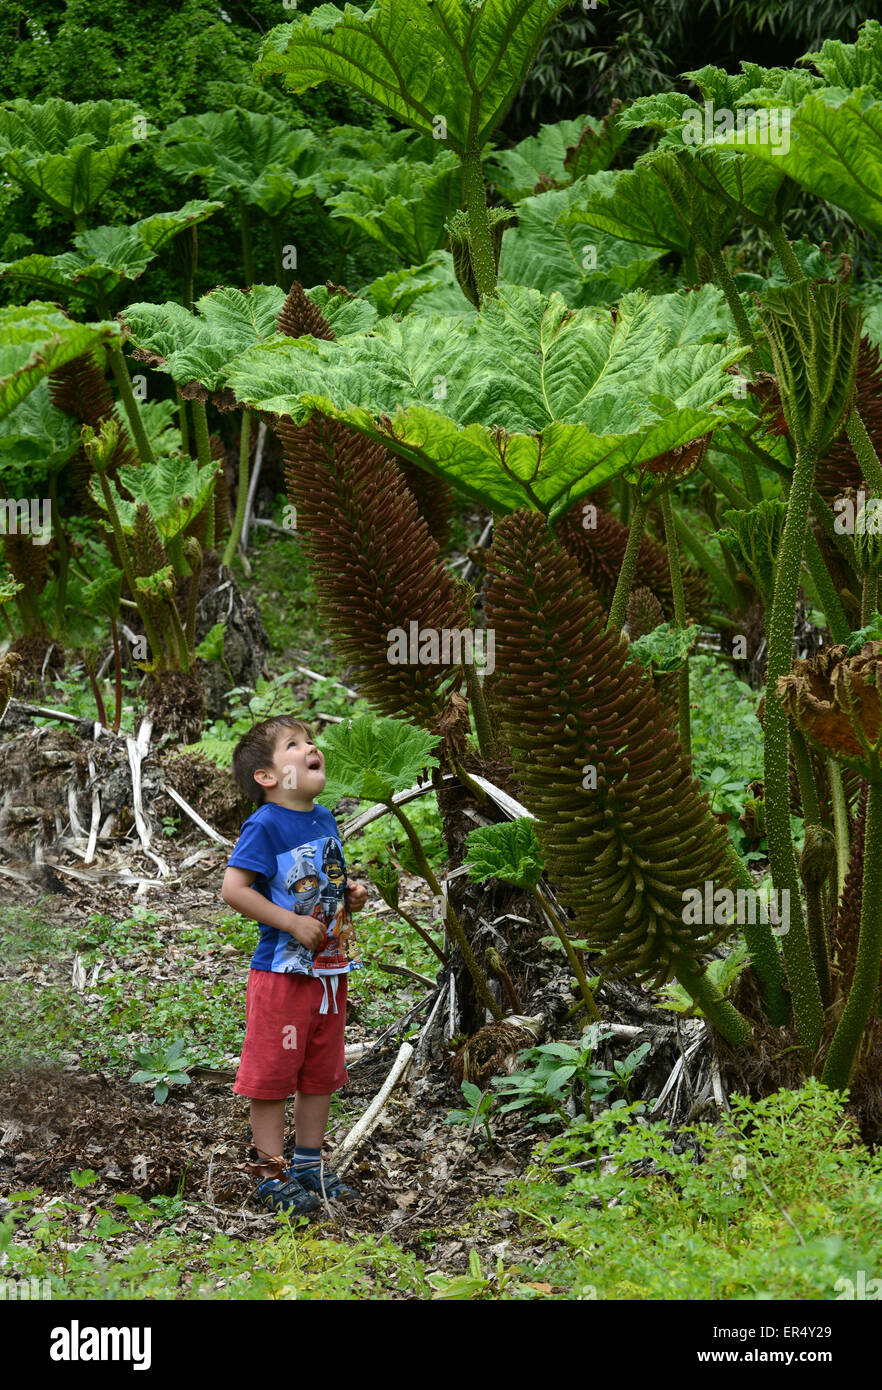 Kleines Kind und riesige Anlage Gunnera Manicata oder Riesen Rhabarber im Frühjahr Uk Stockfoto